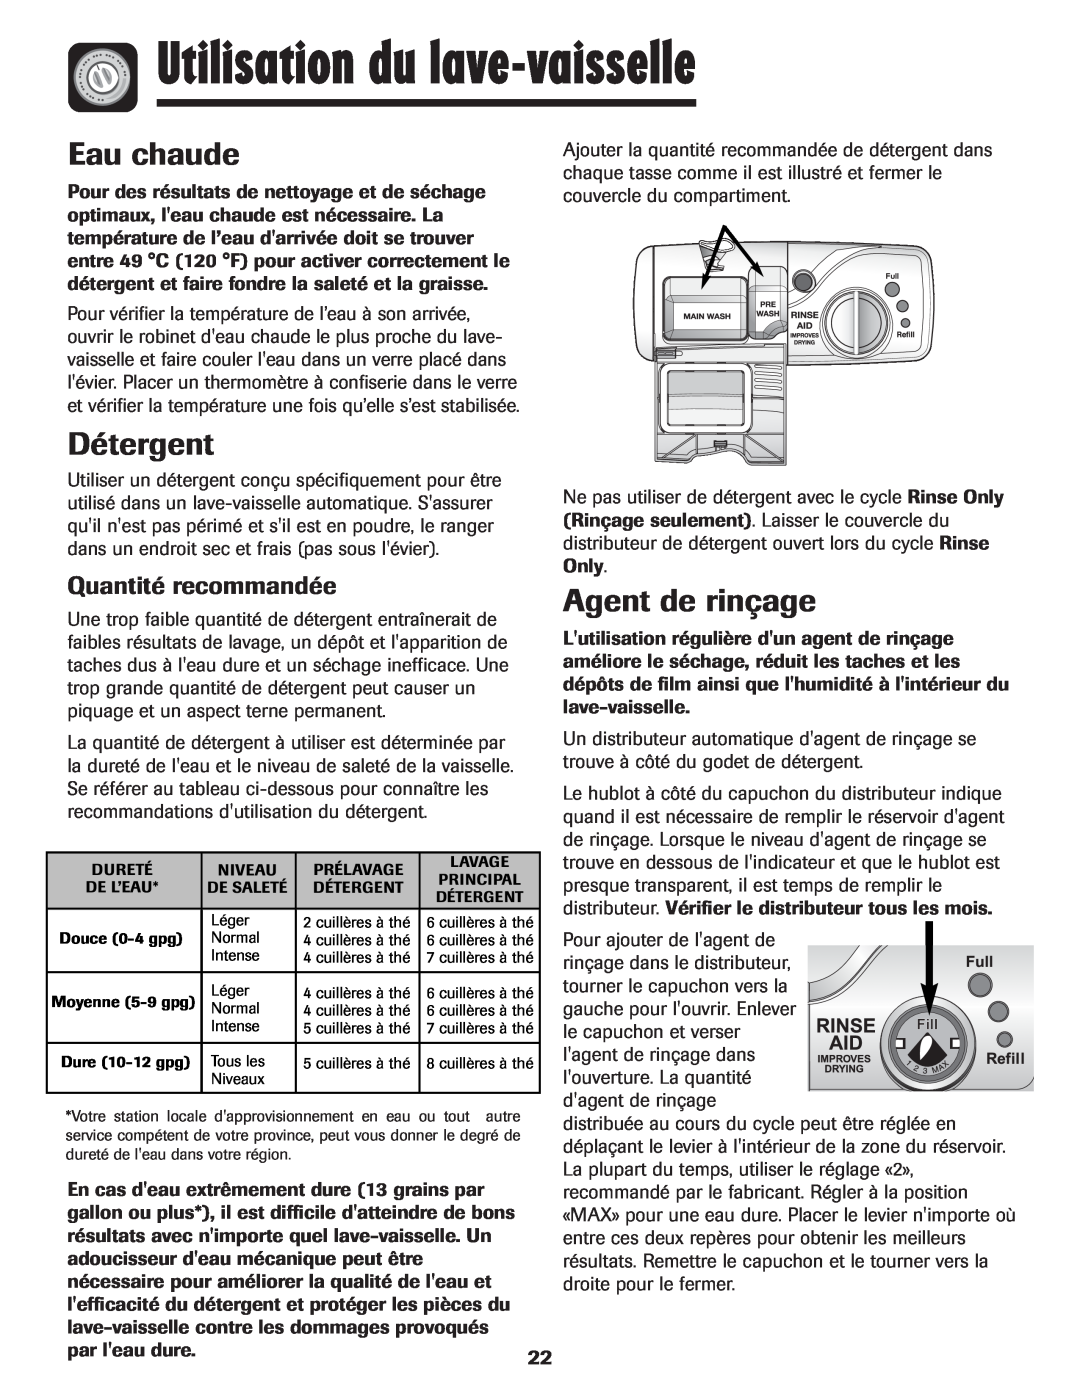 Maytag MDB-5 warranty Utilisation du lave-vaisselle, Eau chaude, Détergent, Agent de rinçage, Quantité recommandée 